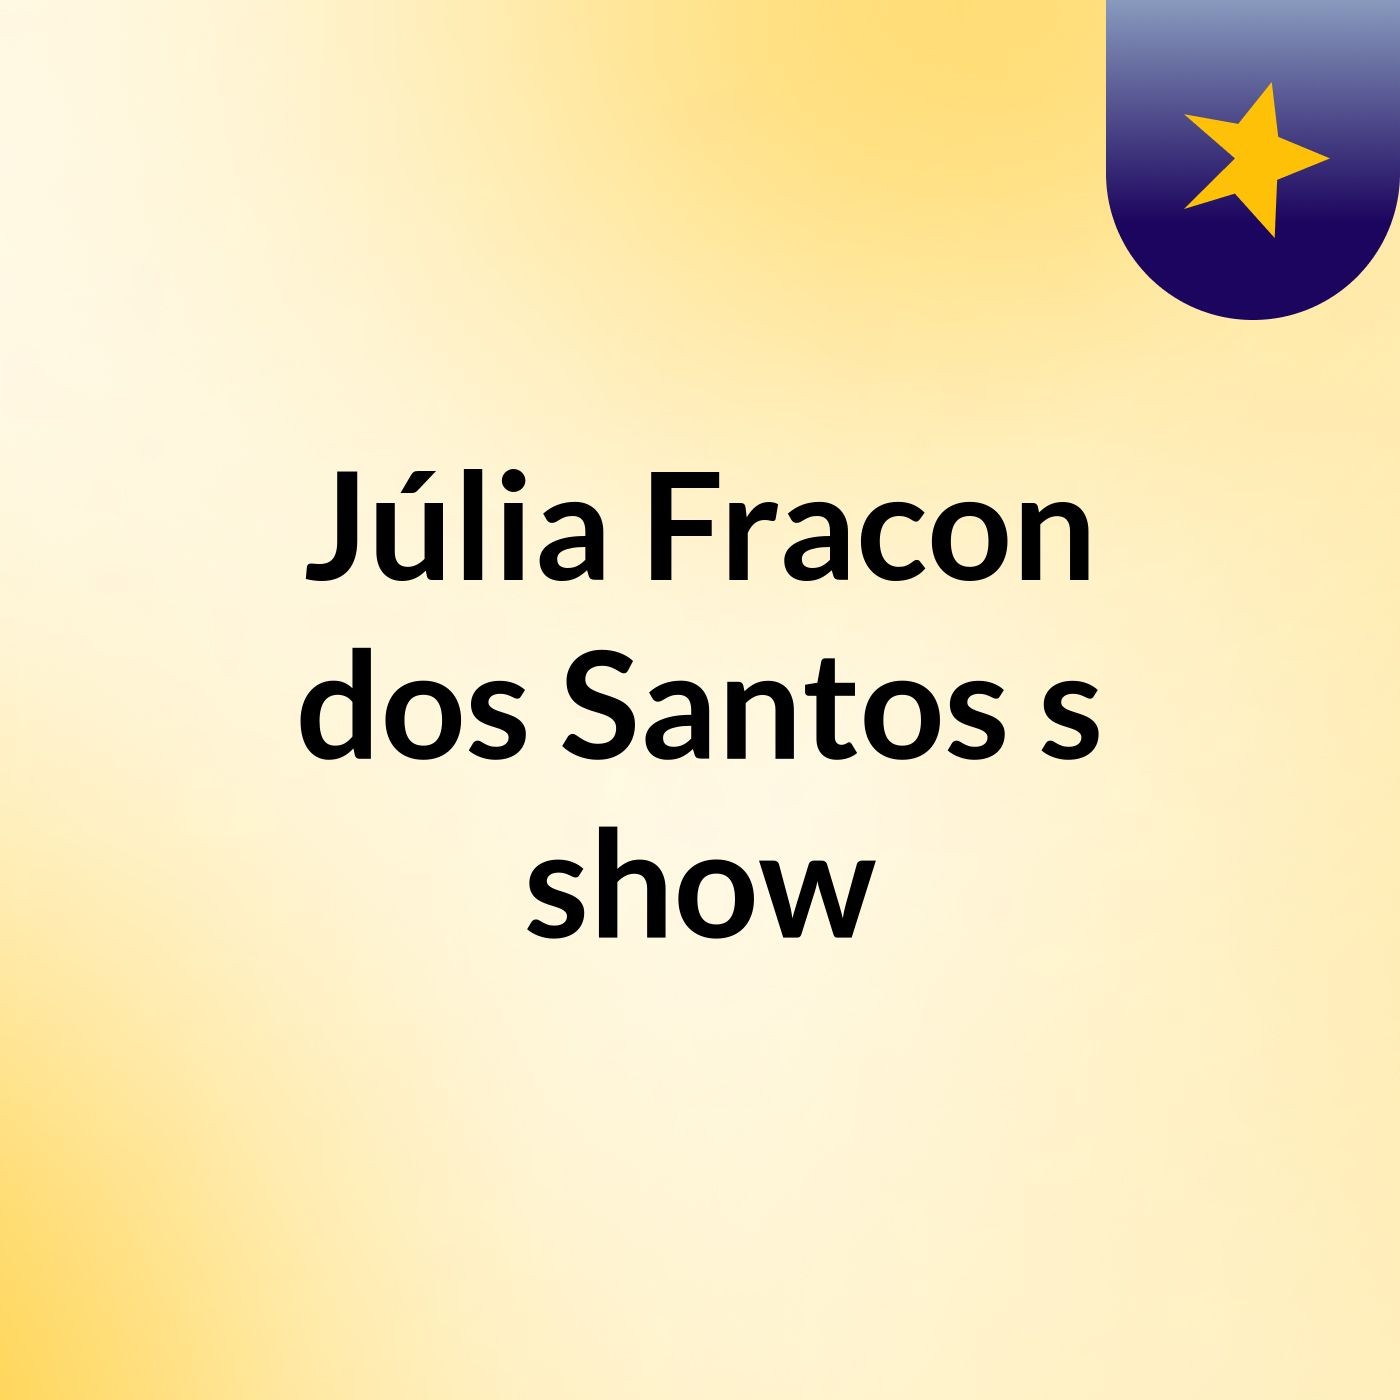 Júlia Fracon dos Santos's show